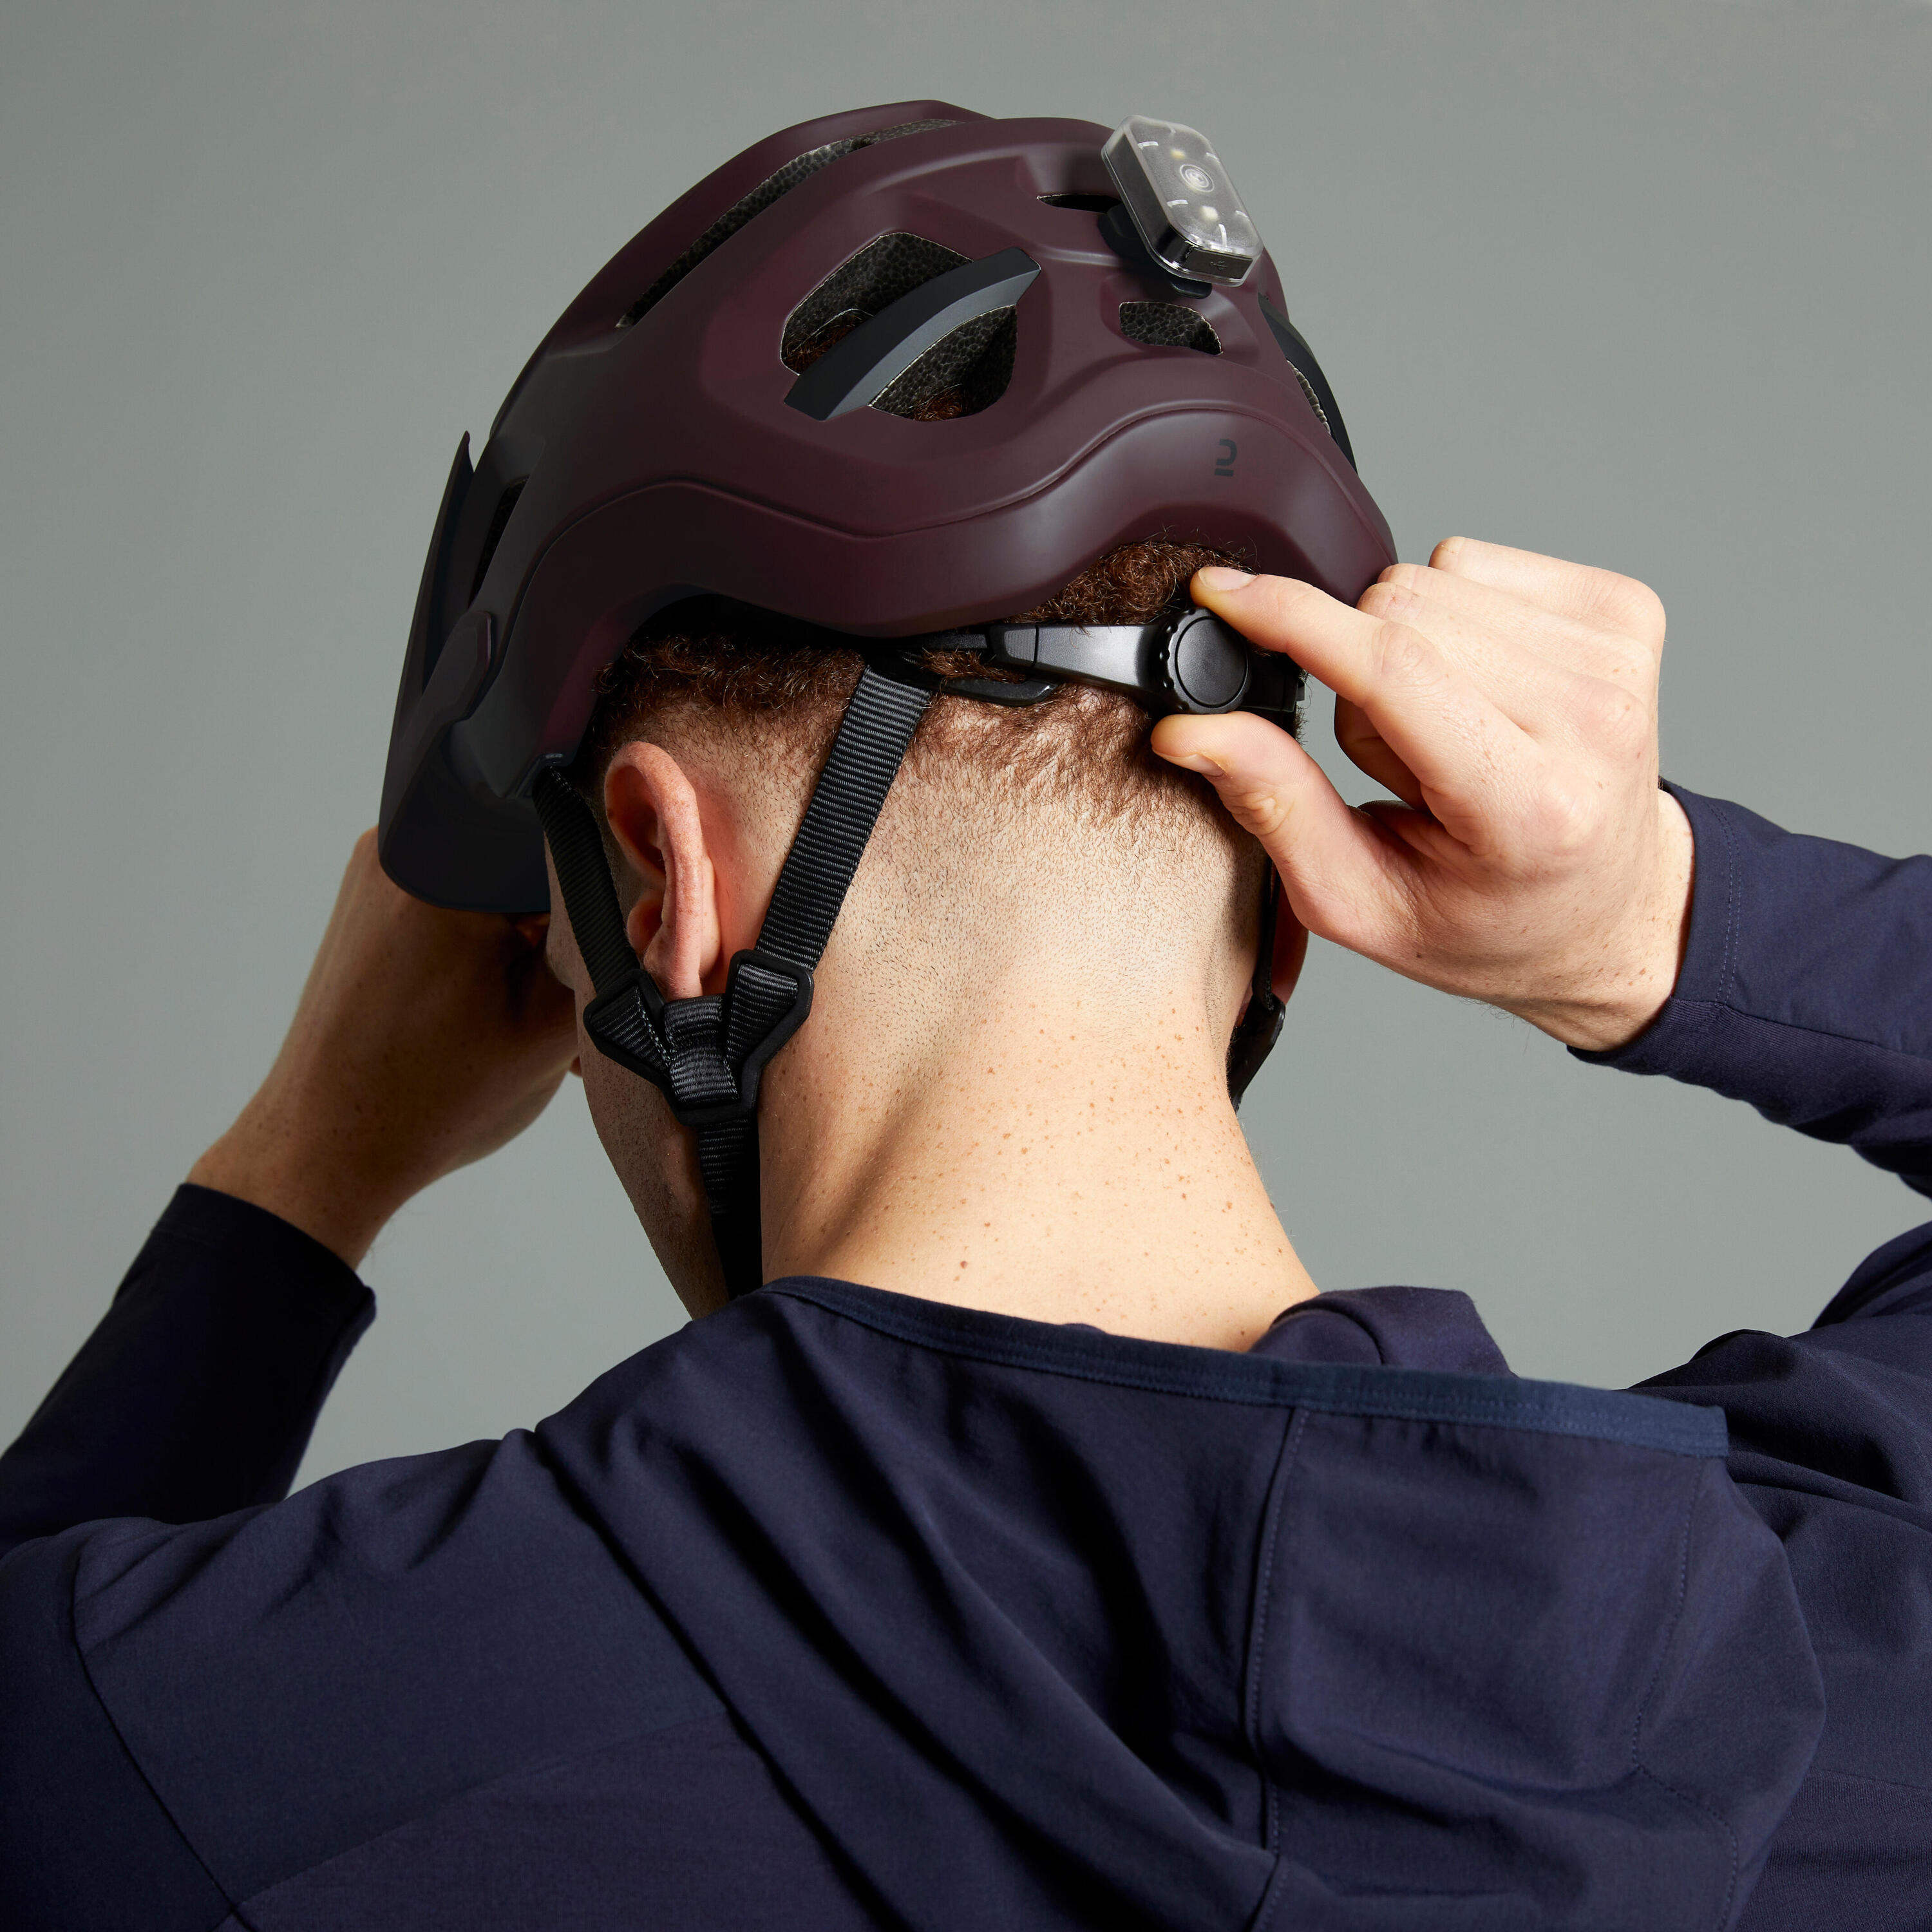 Mountain Bike Helmet EXPL 500 - Burgundy 4/18